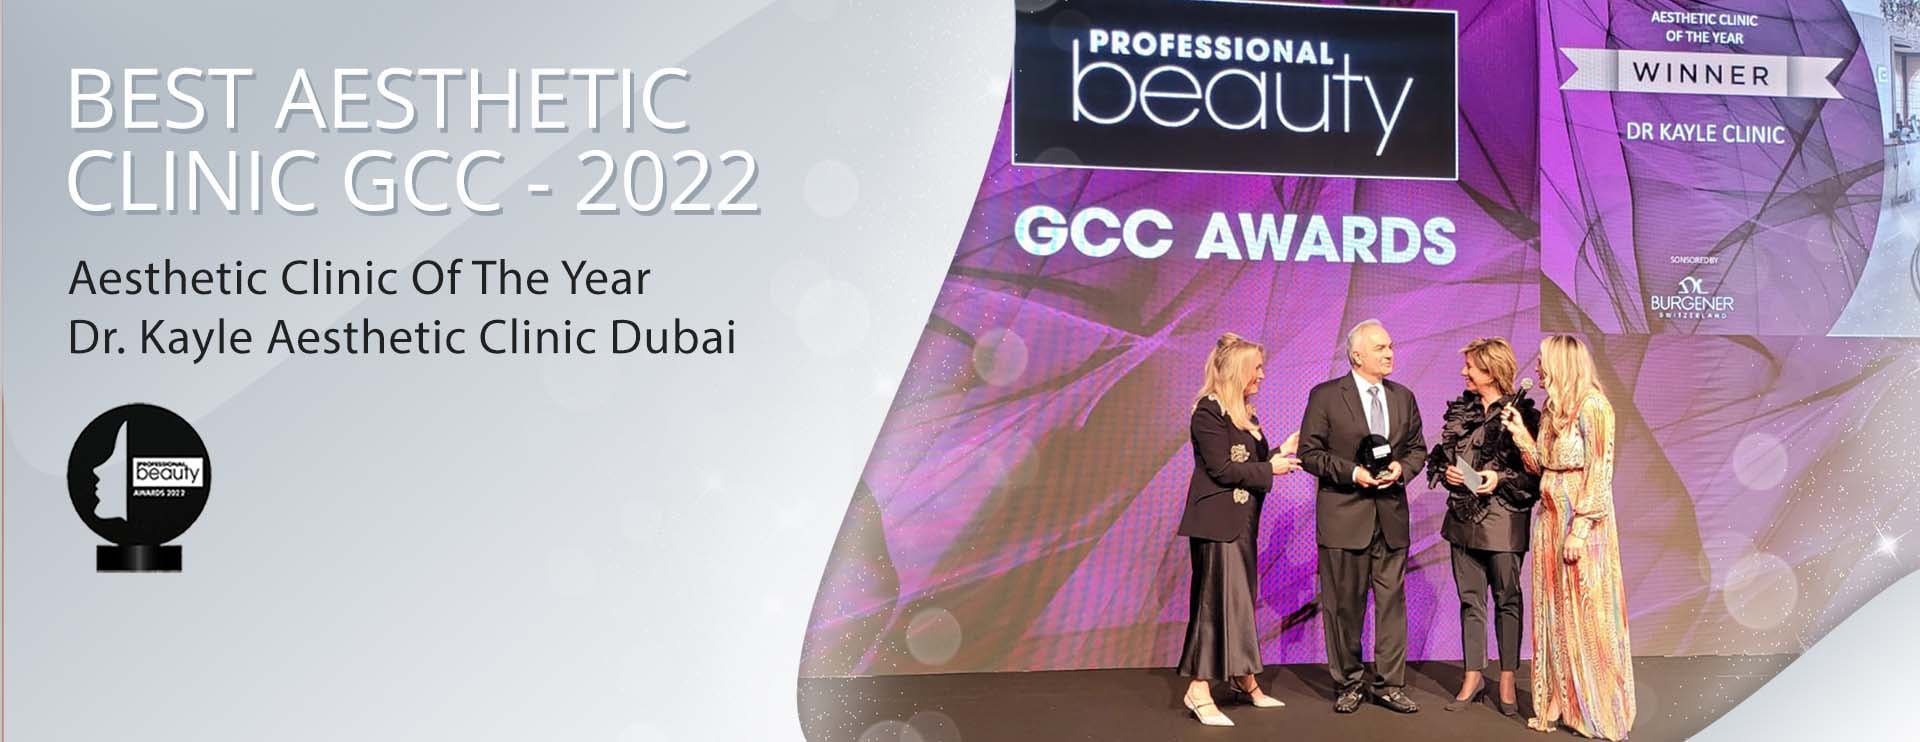 GCC Awards 2022 Winner